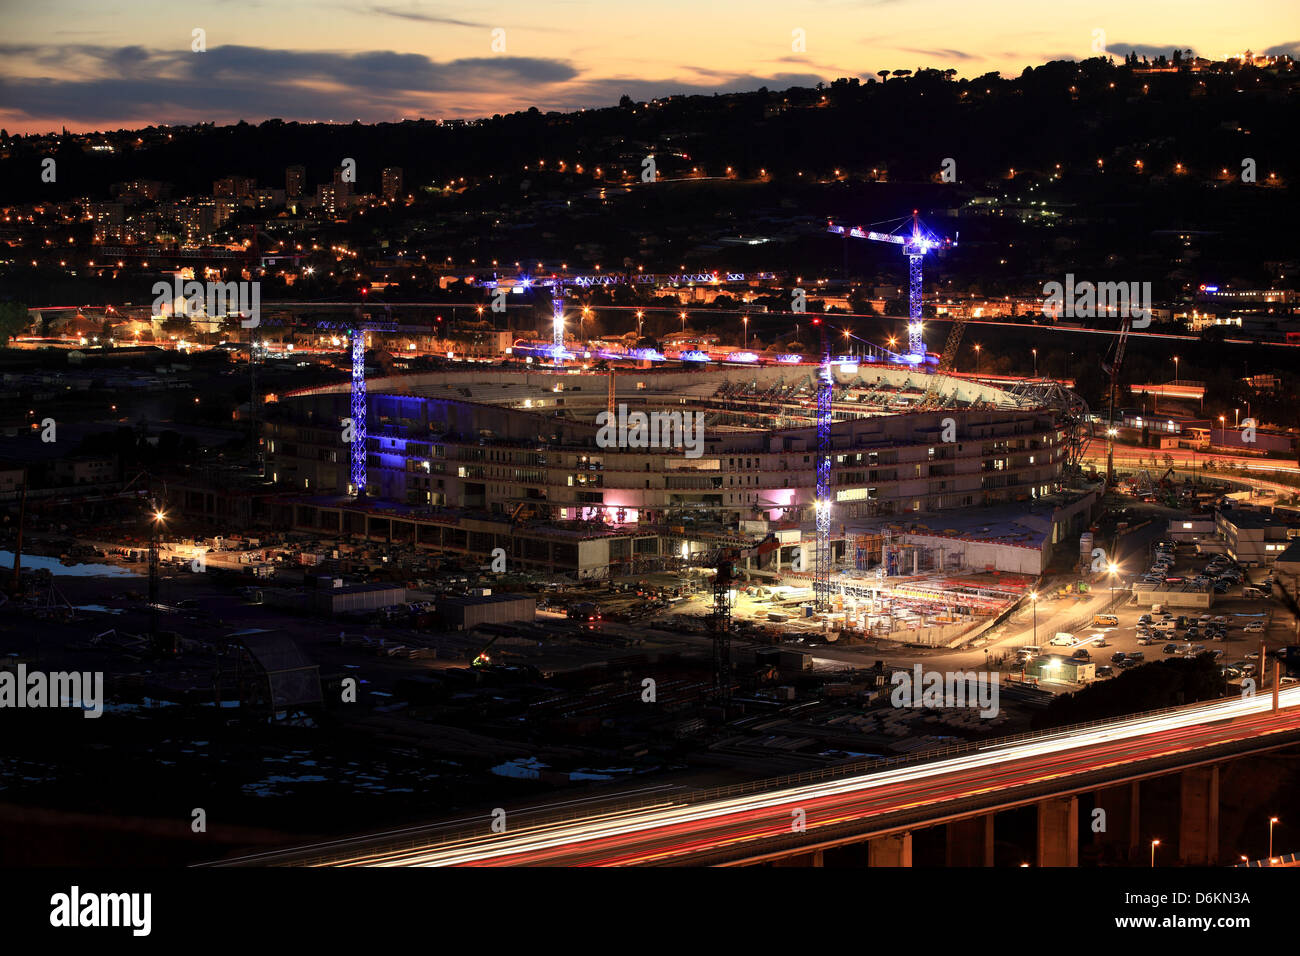 Der Bau des Stadions Allianz Riviera in Nizza Stockfoto